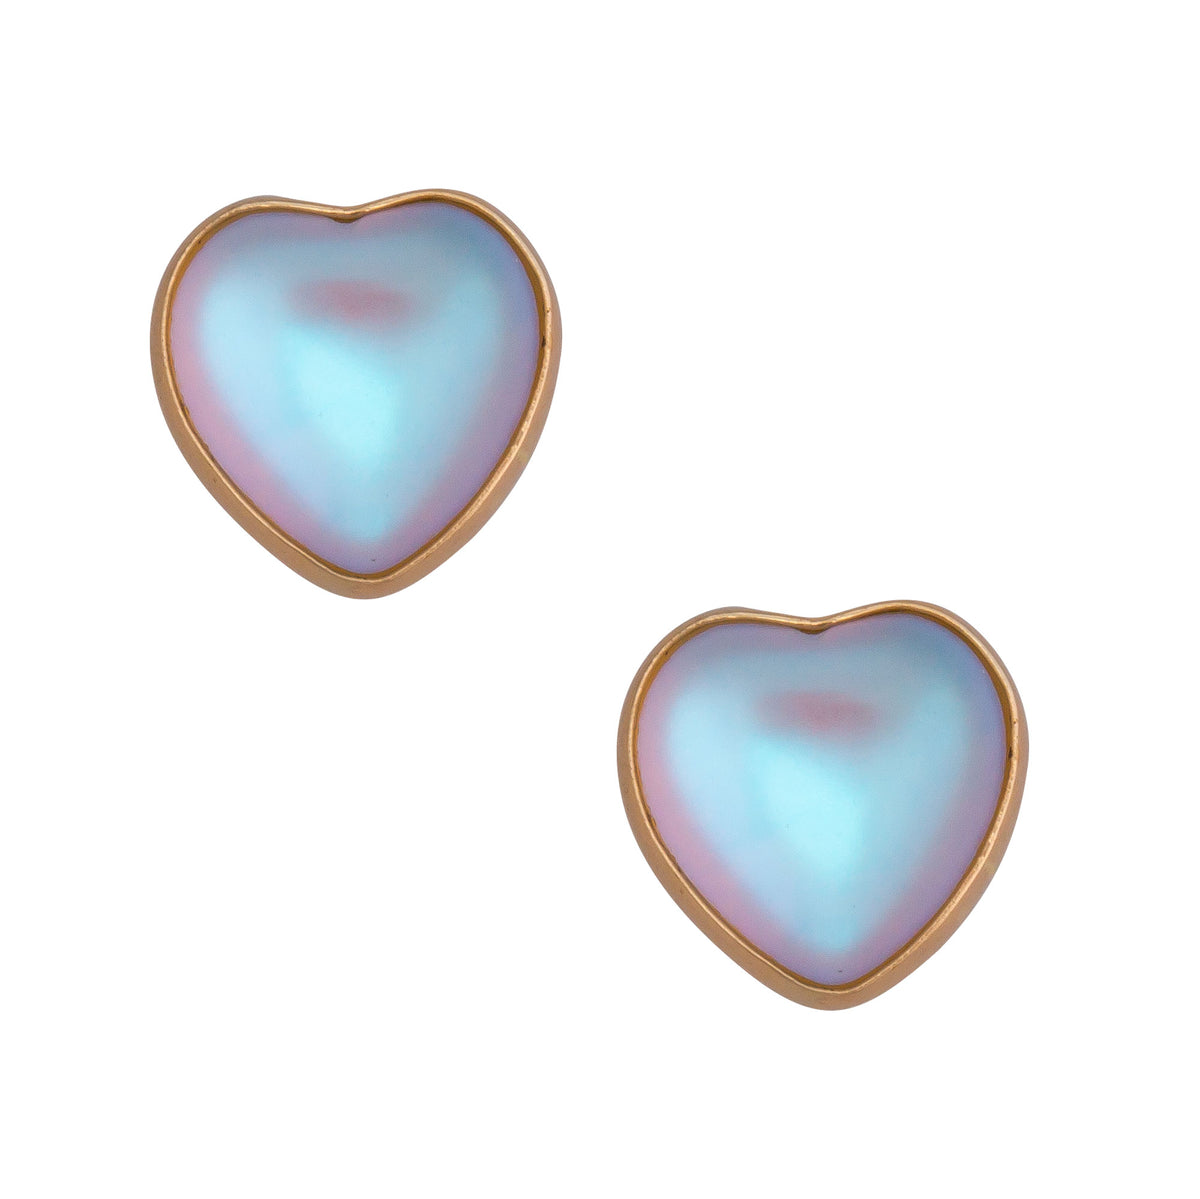 Alchemia Luminite Heart Post Earrings | Charles Albert Jewelry